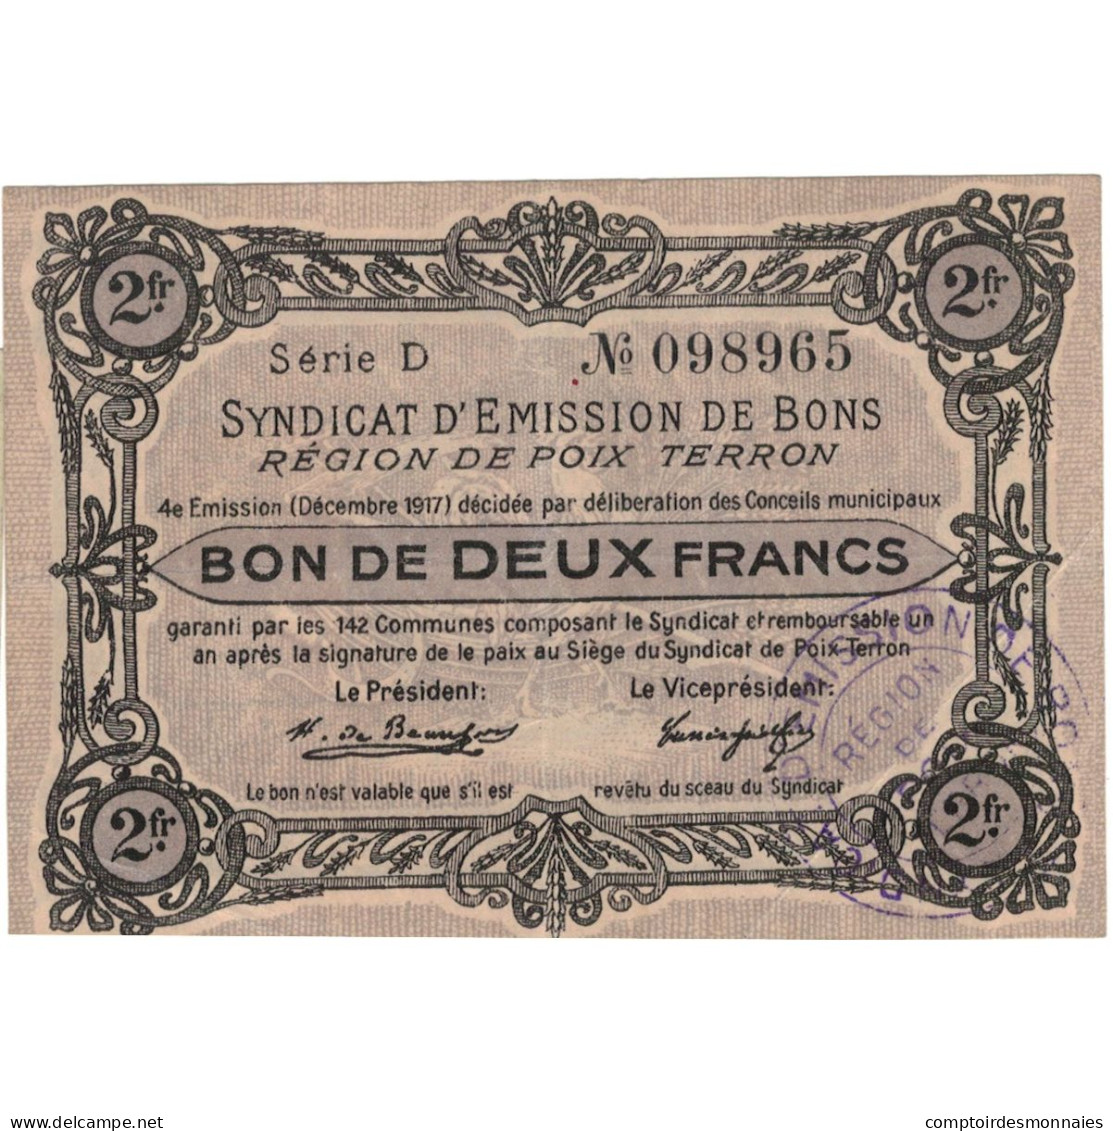 France, Poix-Terron, 2 Francs, 1917, Syndicat D'émission / Bon De, SUP - Bons & Nécessité